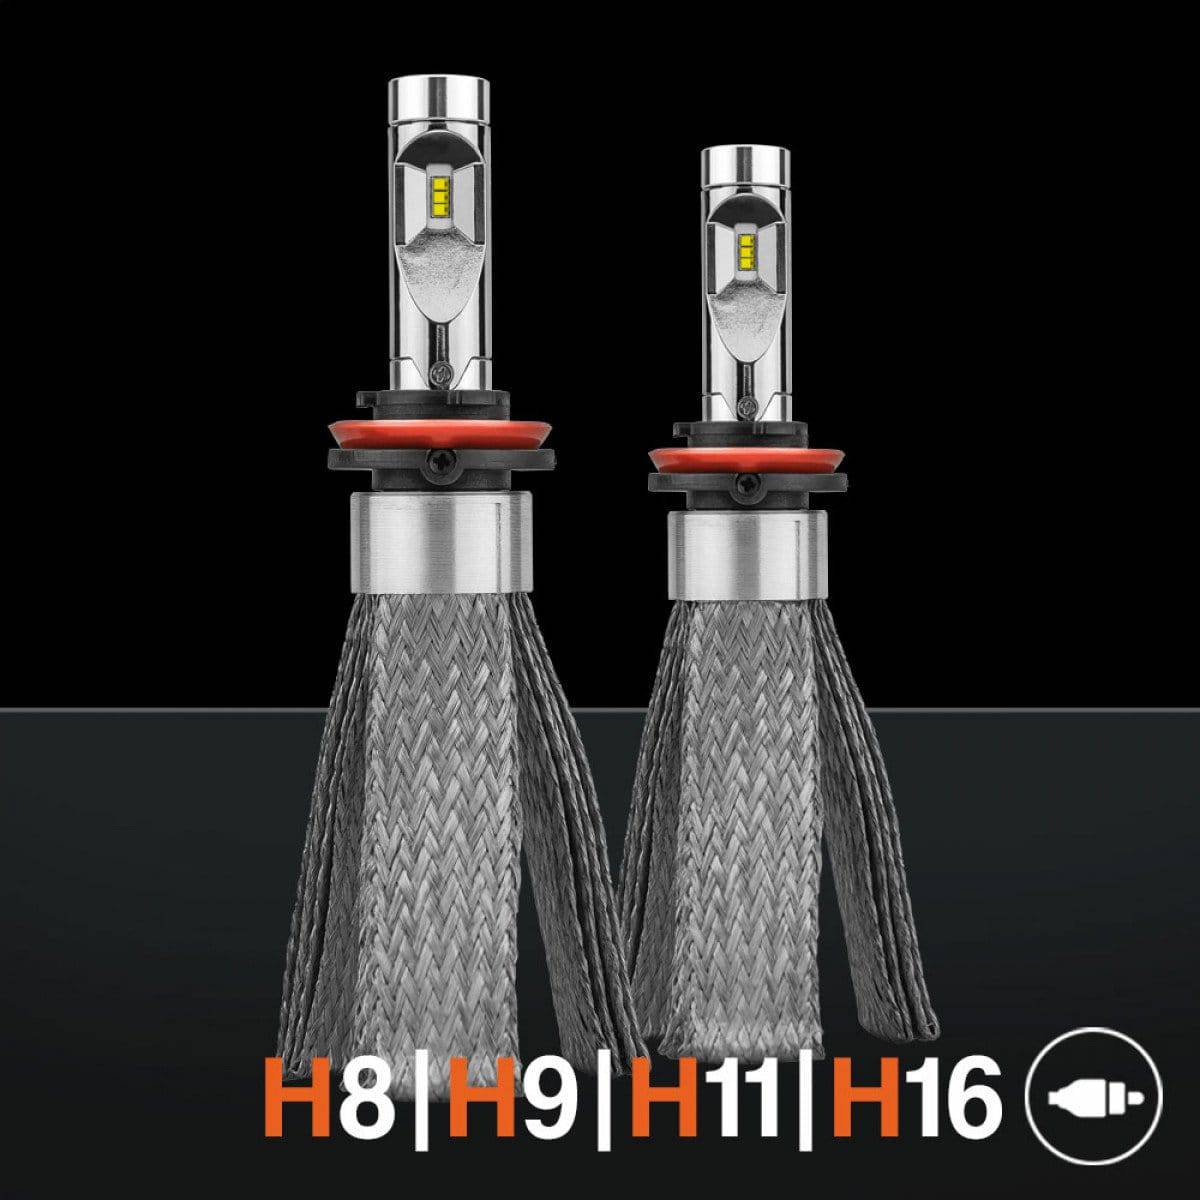 Stedi Copper Head H8 | H9 | H11 | H16 LED Head Light Conversion Kit | Stedi